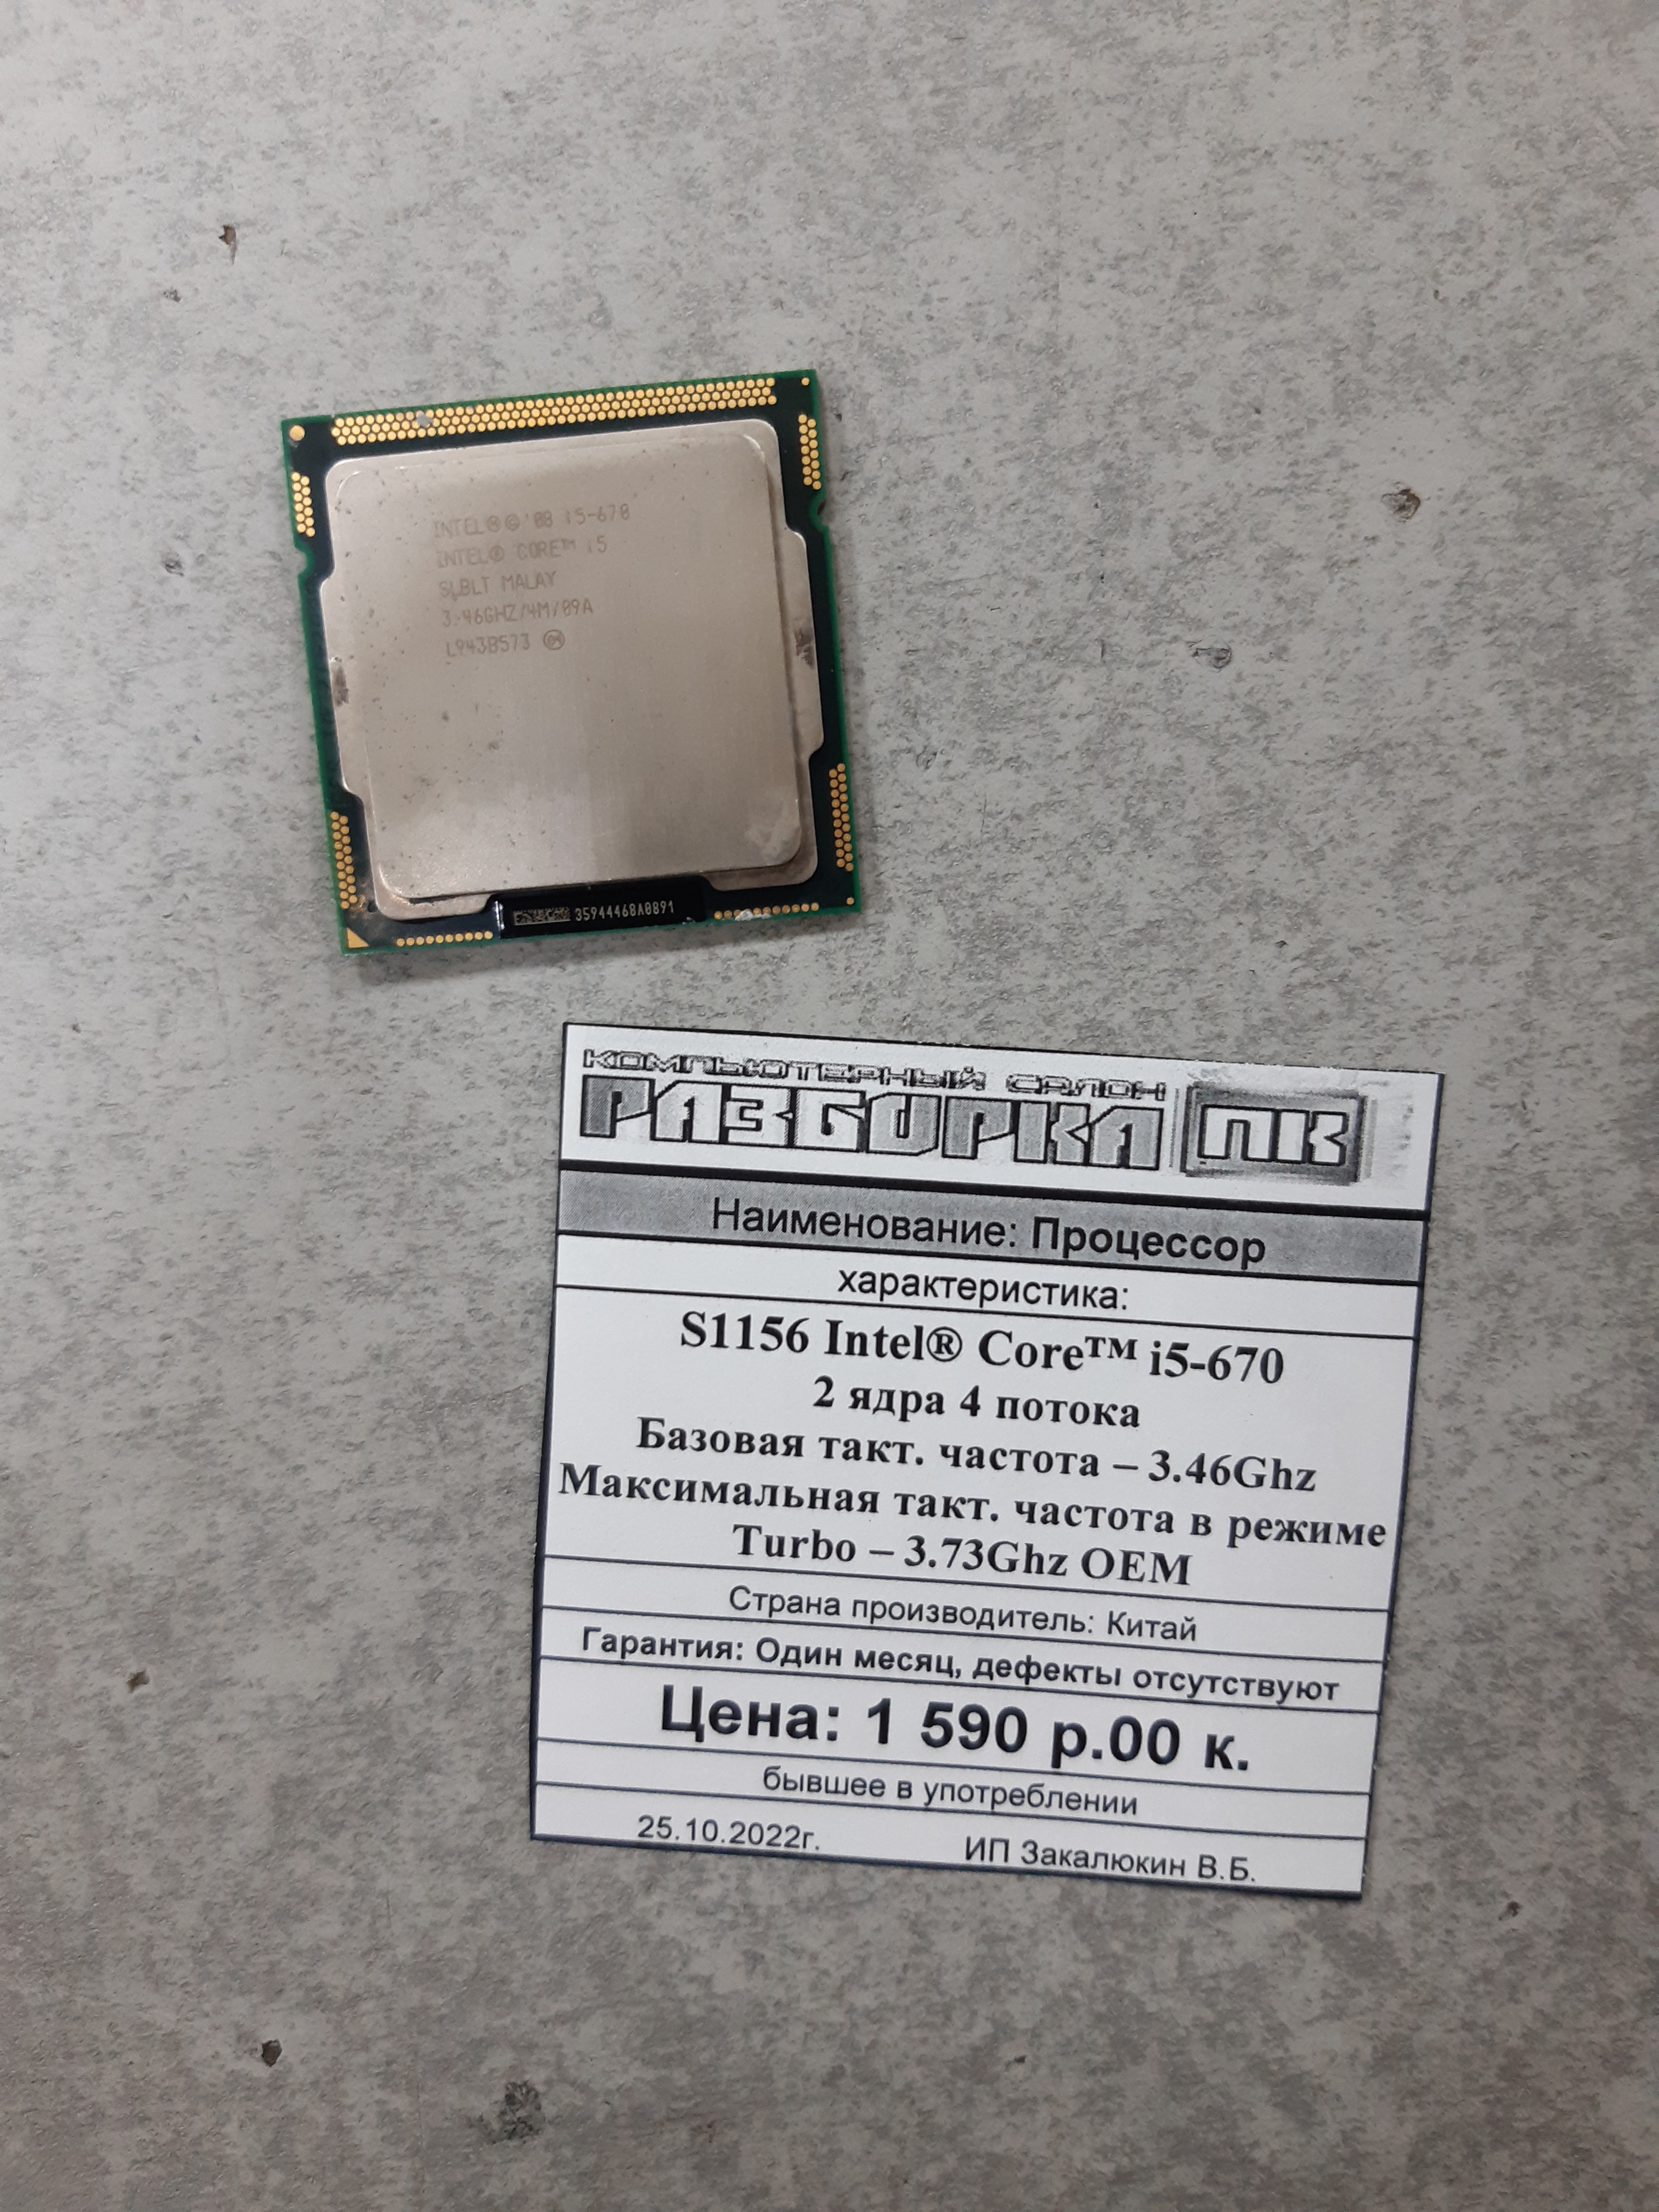 Процессор S1156 Intel® Core™ i5-670 2 ядра 4 потока